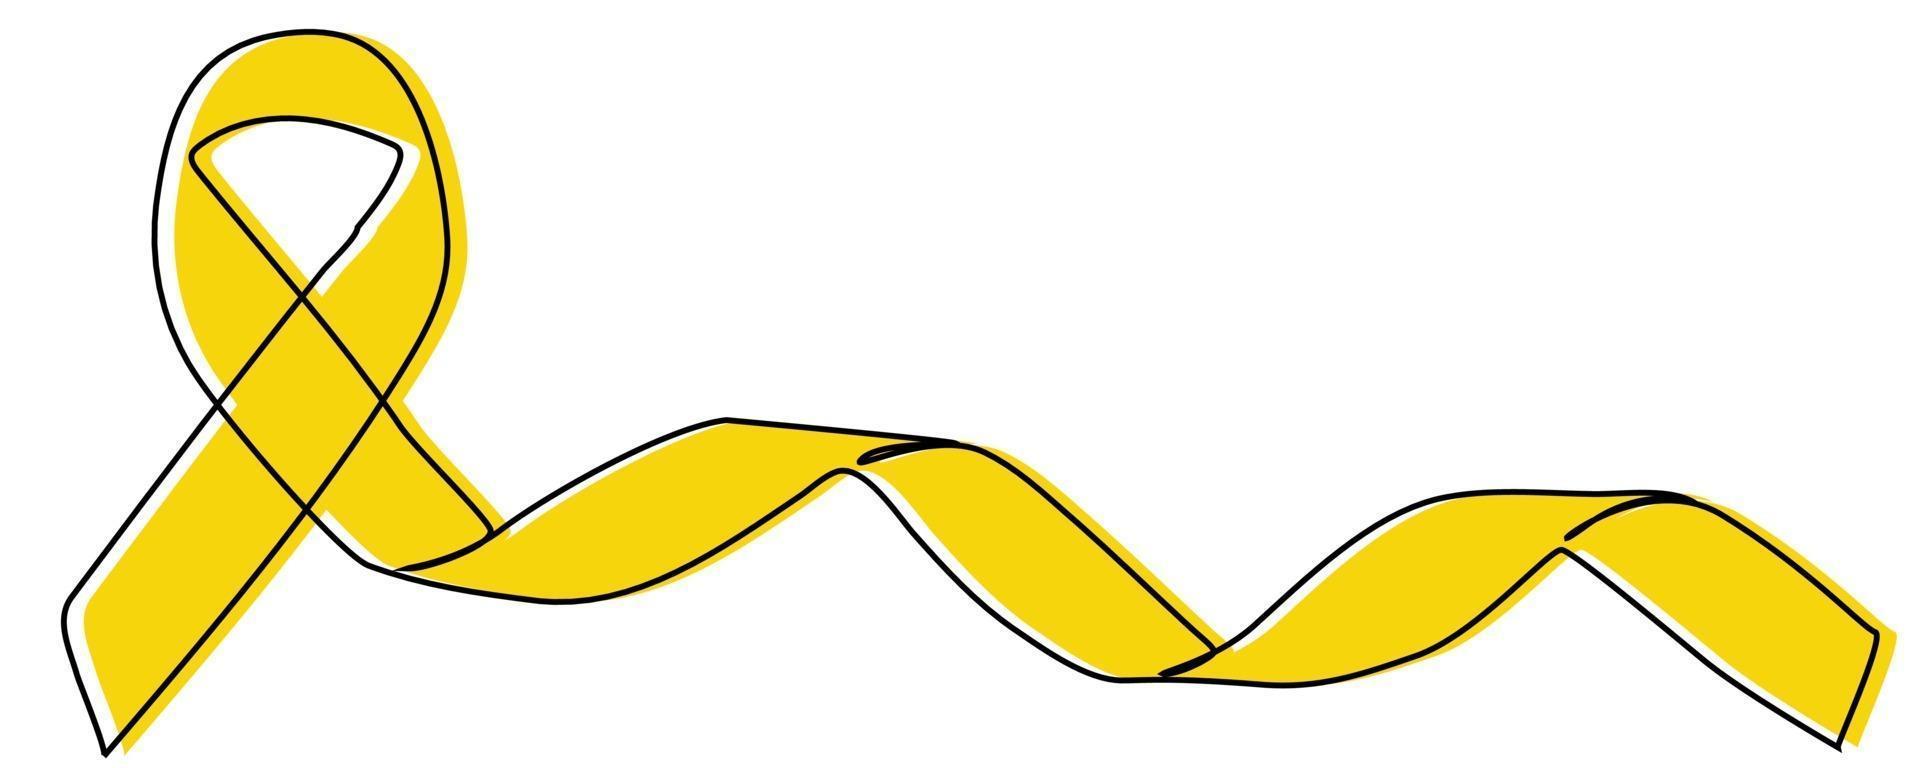 kontinuerlig linje. gult band hjälper patienten vektor